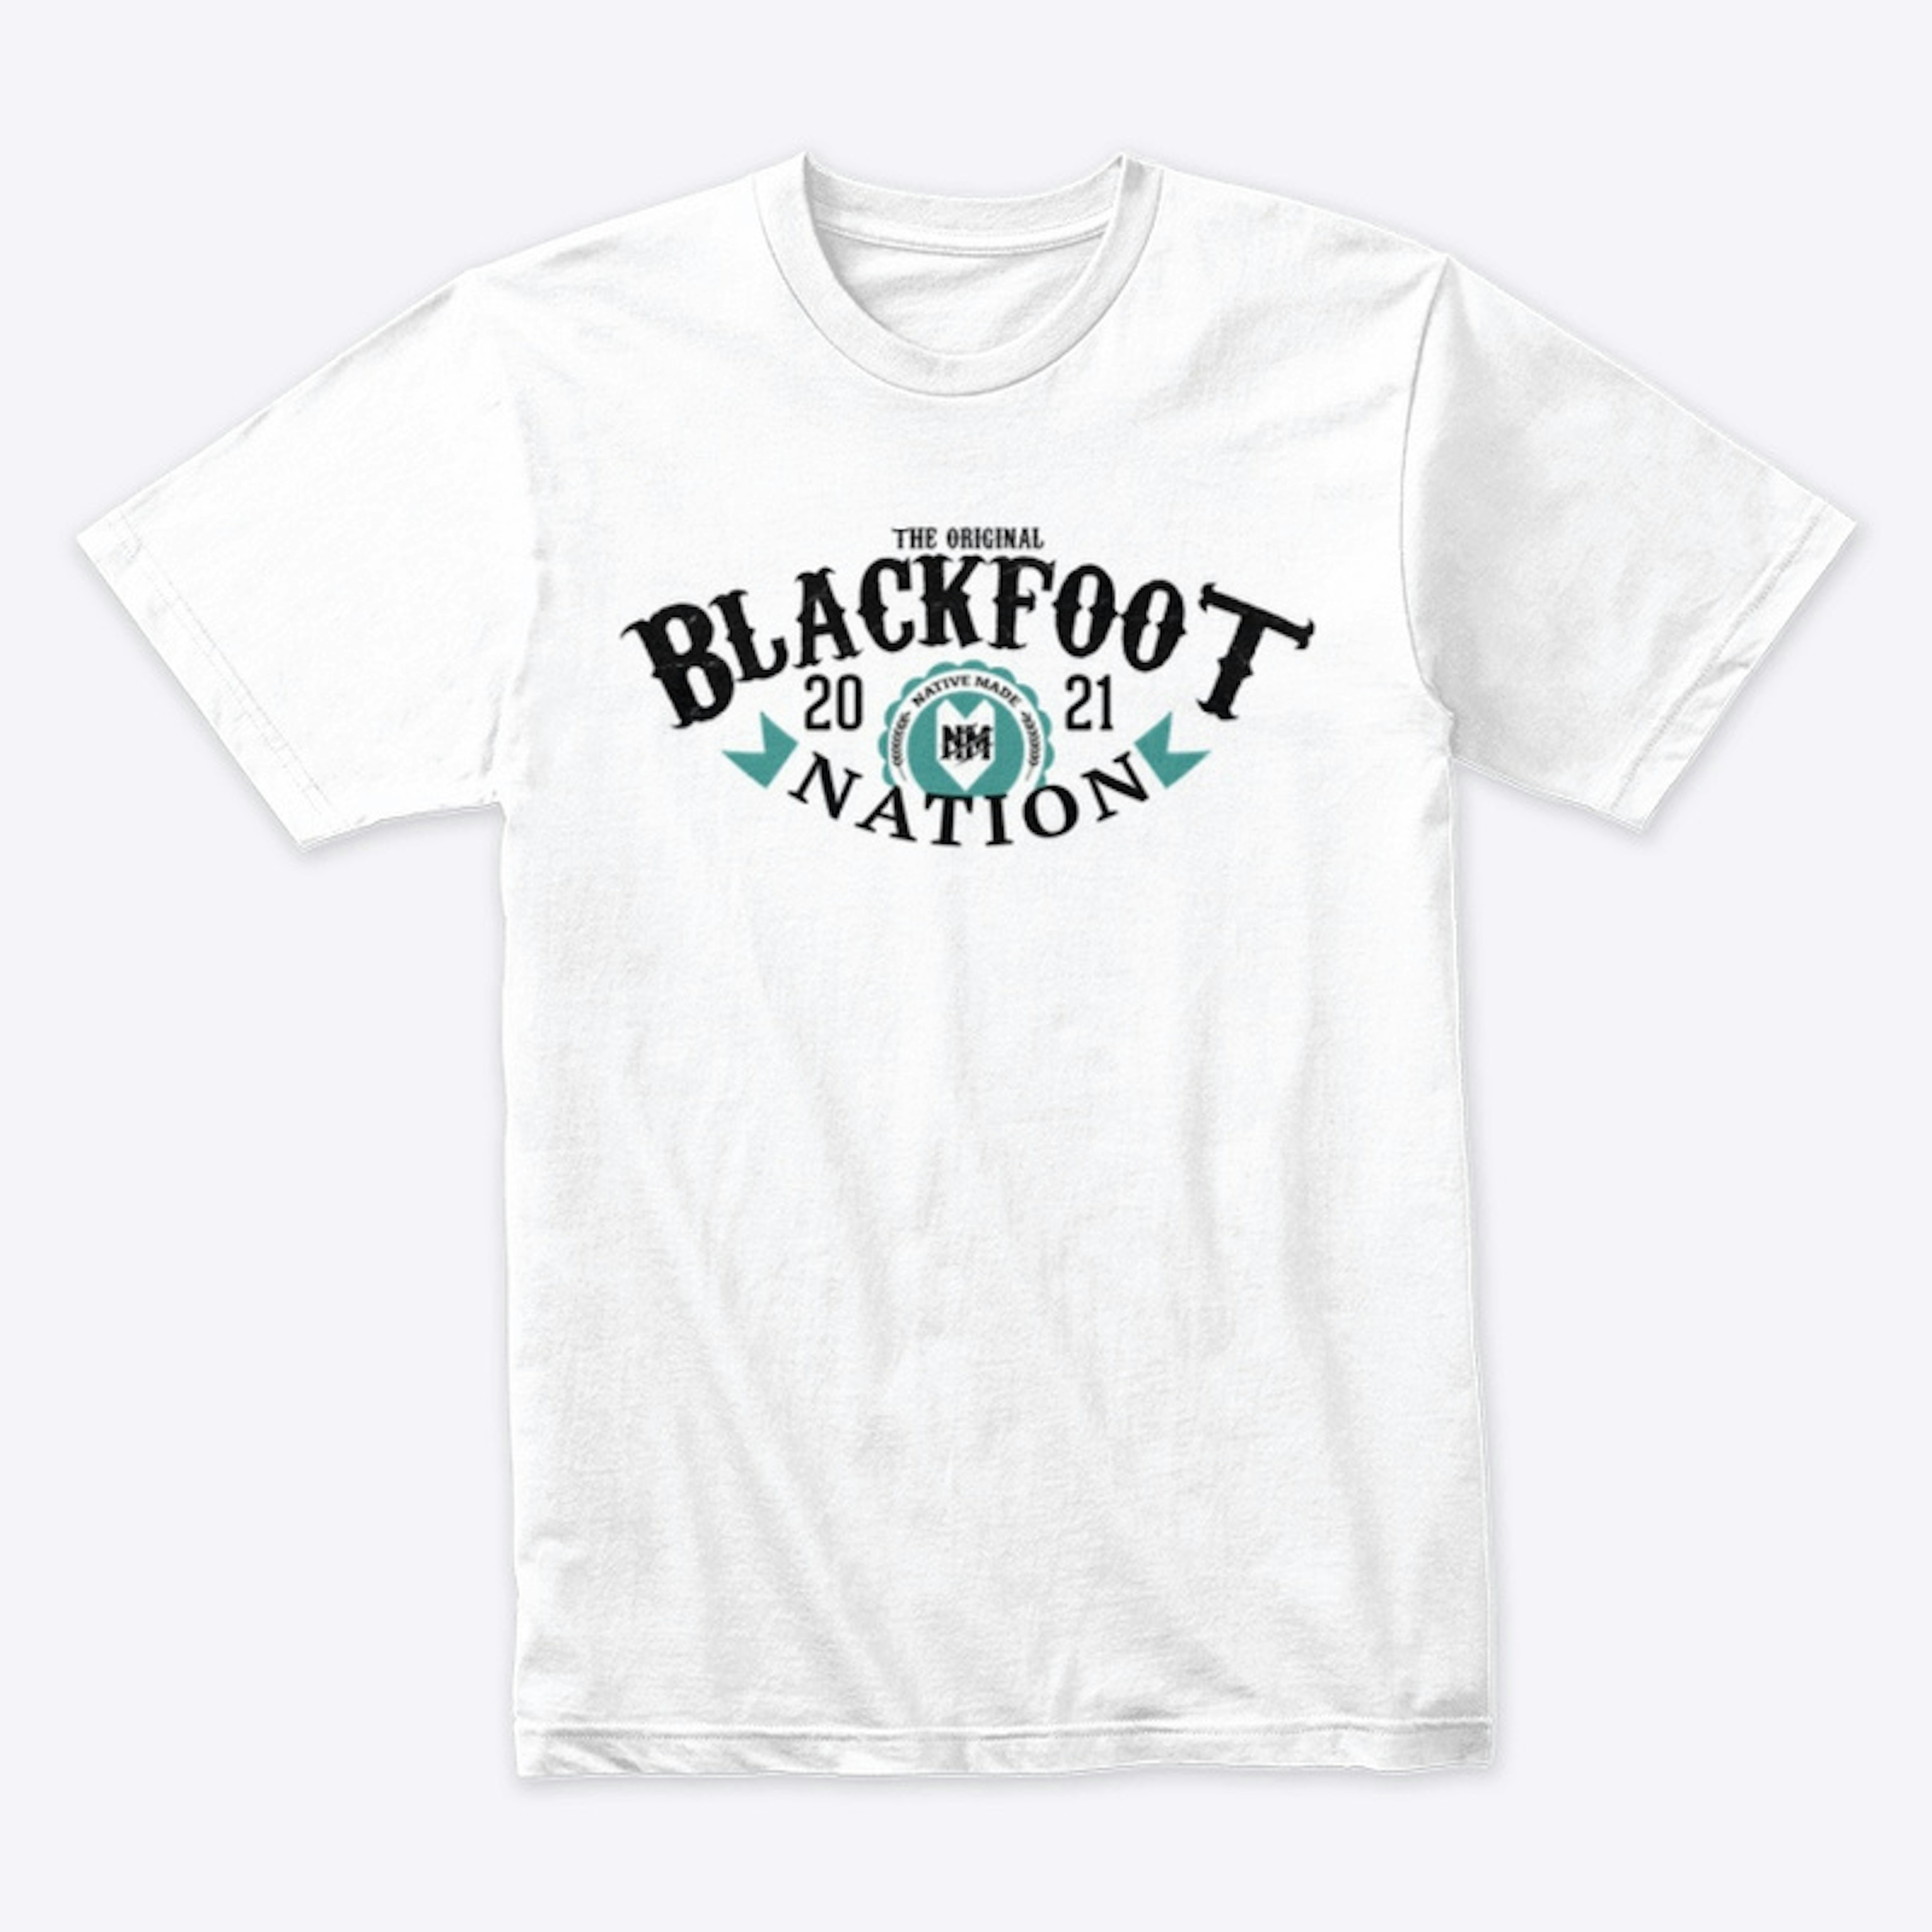 Blackfoot Tee